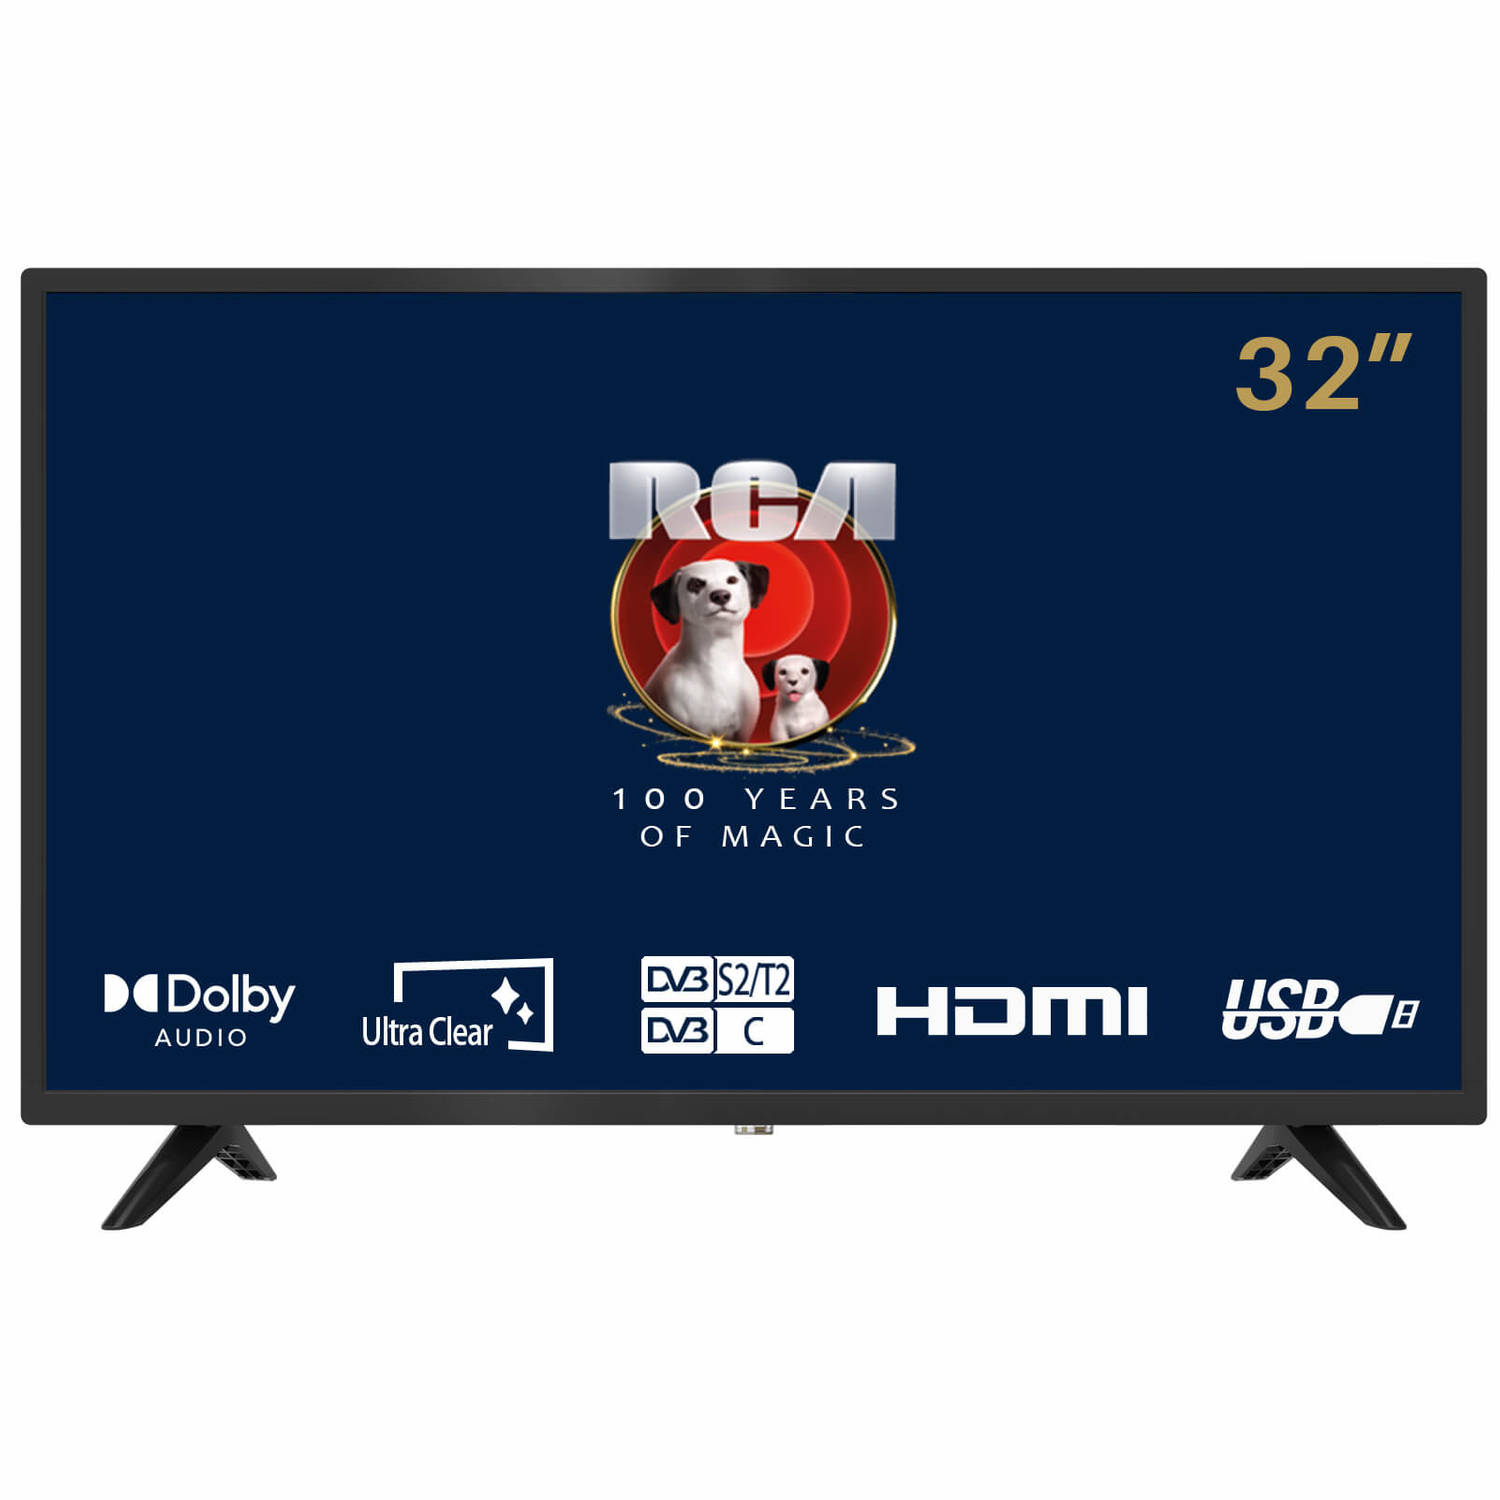 Rca Irb32h3 32inch Hd-ready Standaard Tv